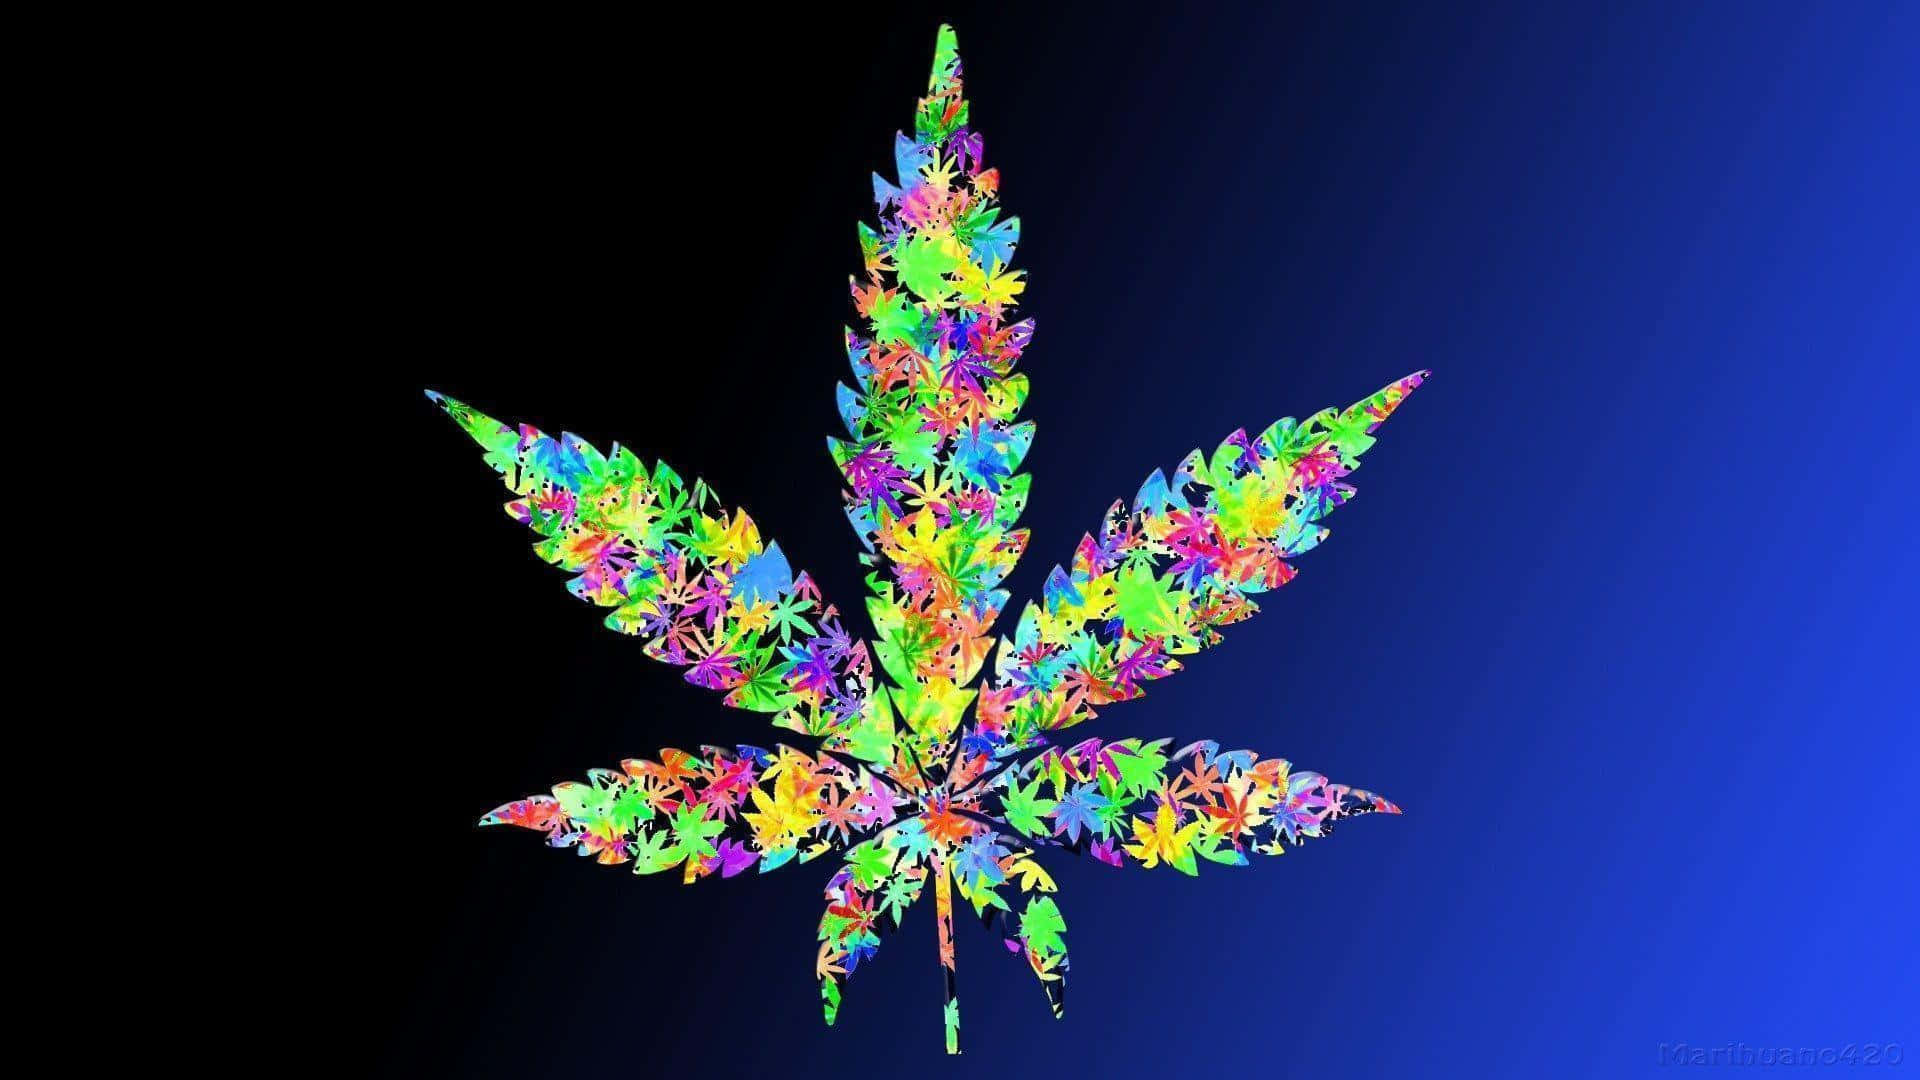 Marijuana Wallpaper Images - Free Download on Freepik